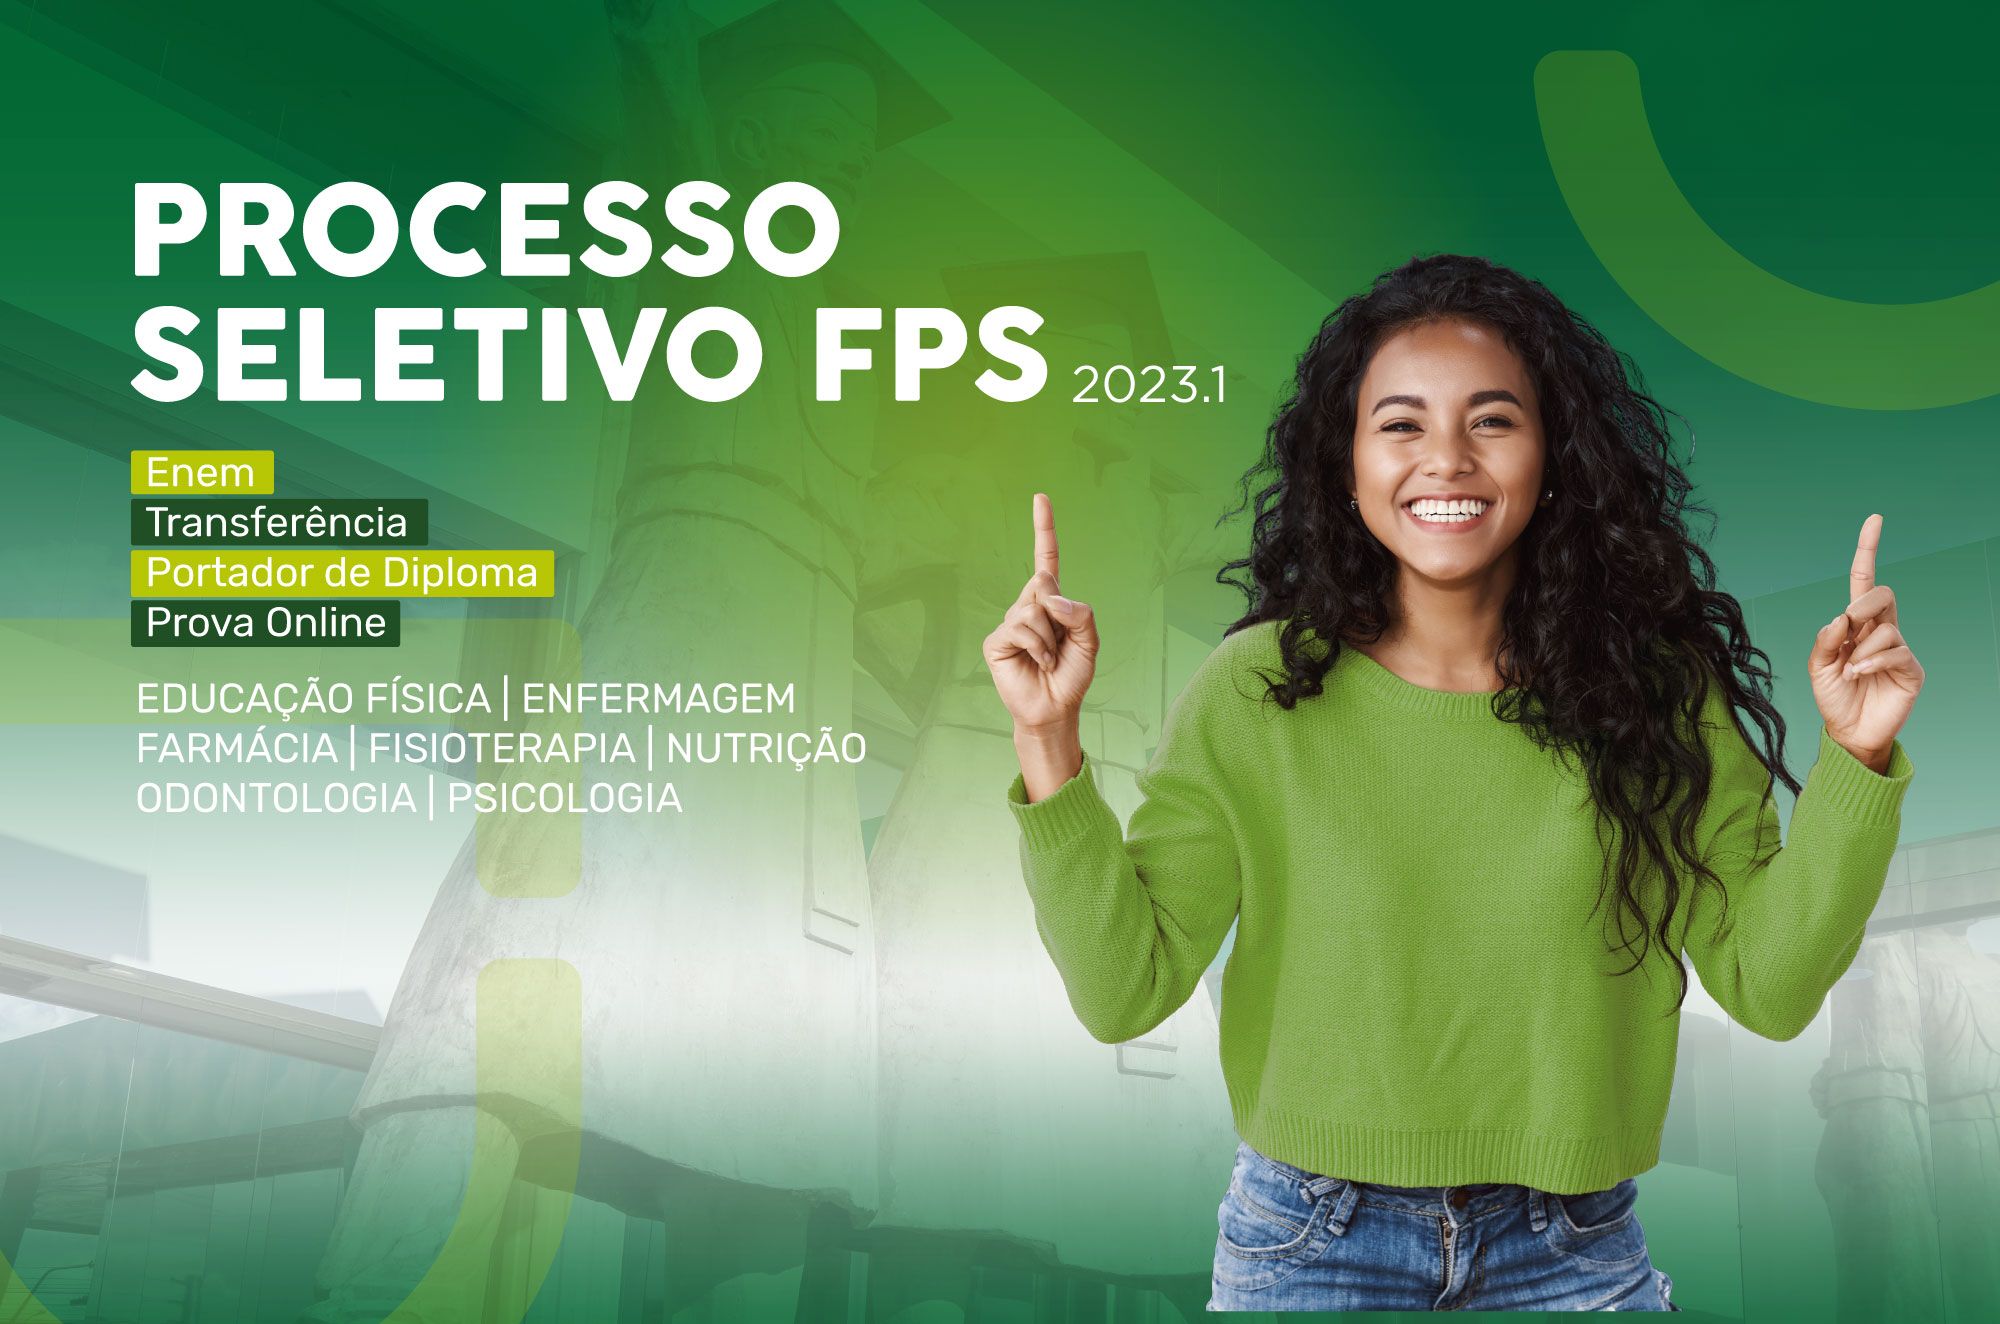 PROCESSO SELETIVO FPS - 2023.1 (EDITAL, INSCRIÇÕES E INFORMAÇÕES) 